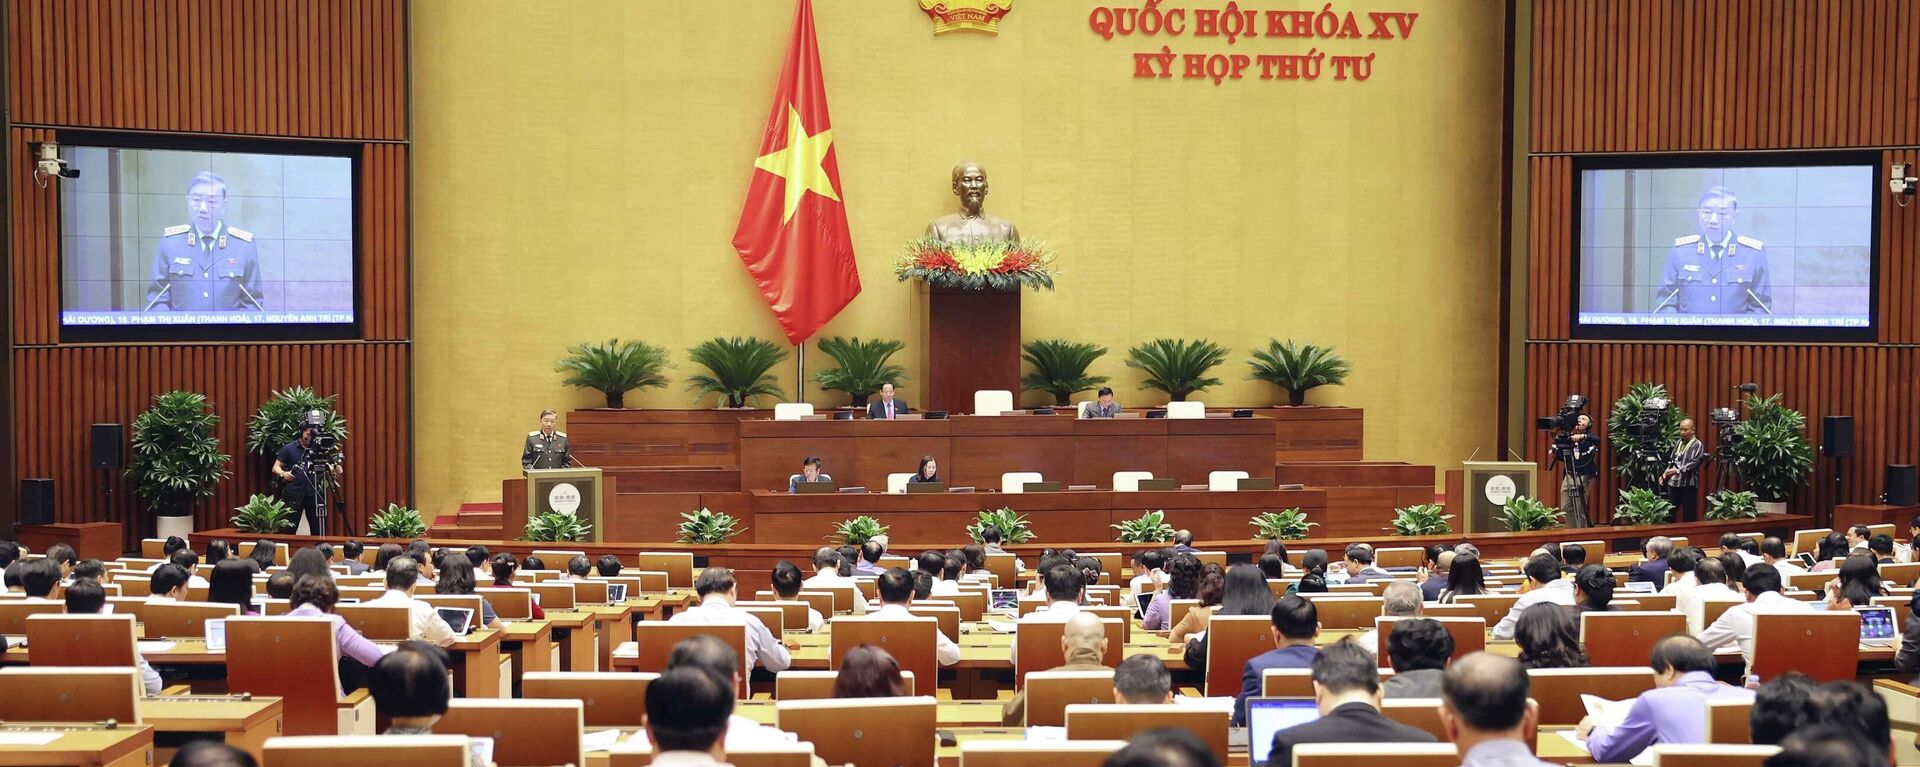 Quốc hội thảo luận về công tác phòng, chống tội phạm và thi hành án năm 2022 - Sputnik Việt Nam, 1920, 08.11.2022